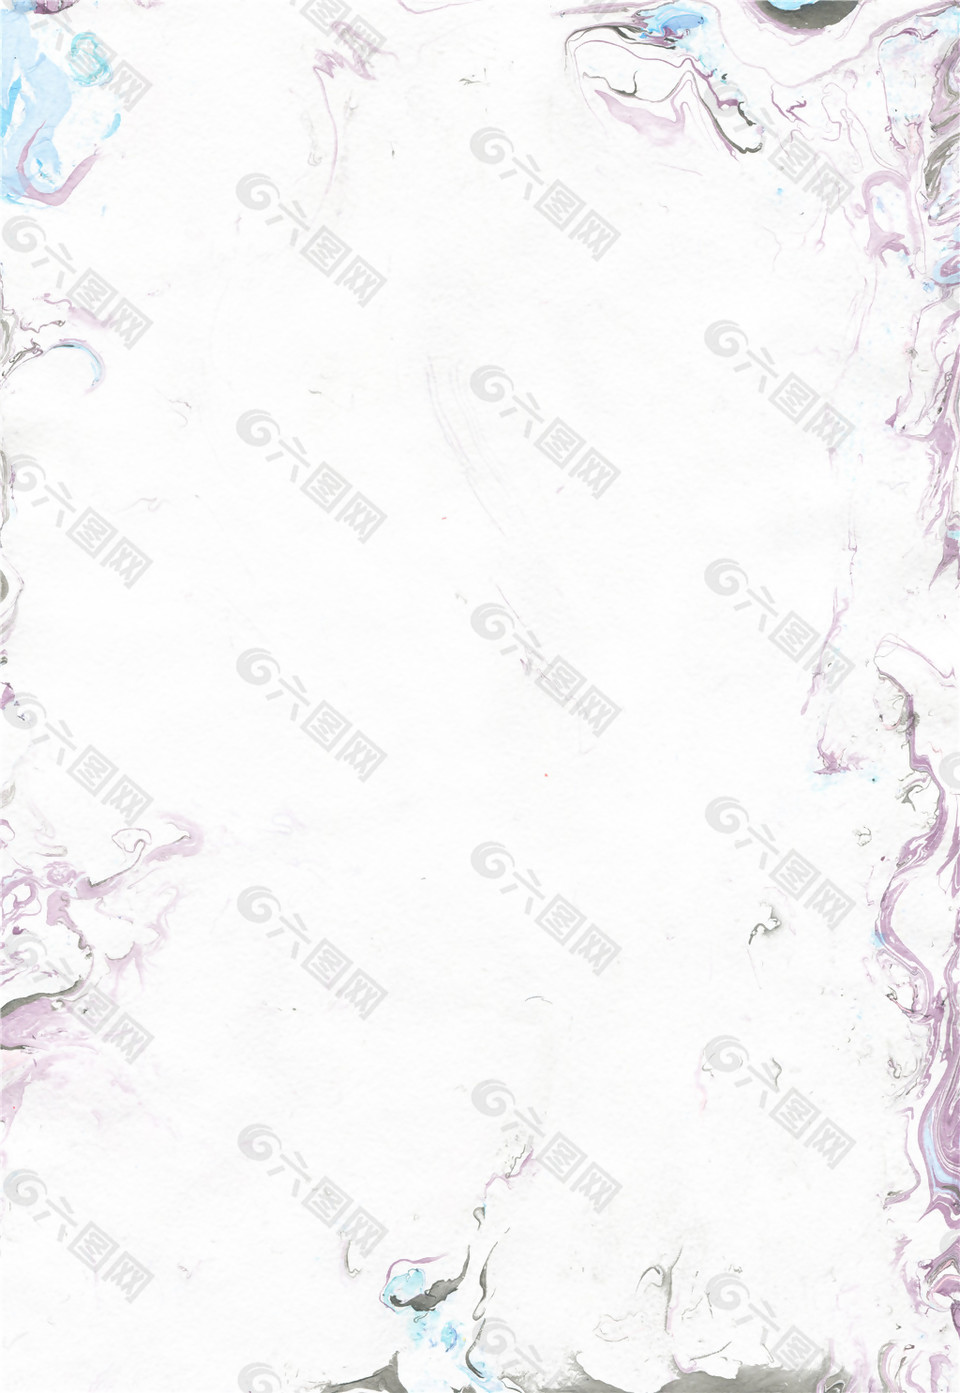 神秘高级暗紫色花纹边框壁纸图案装饰设计